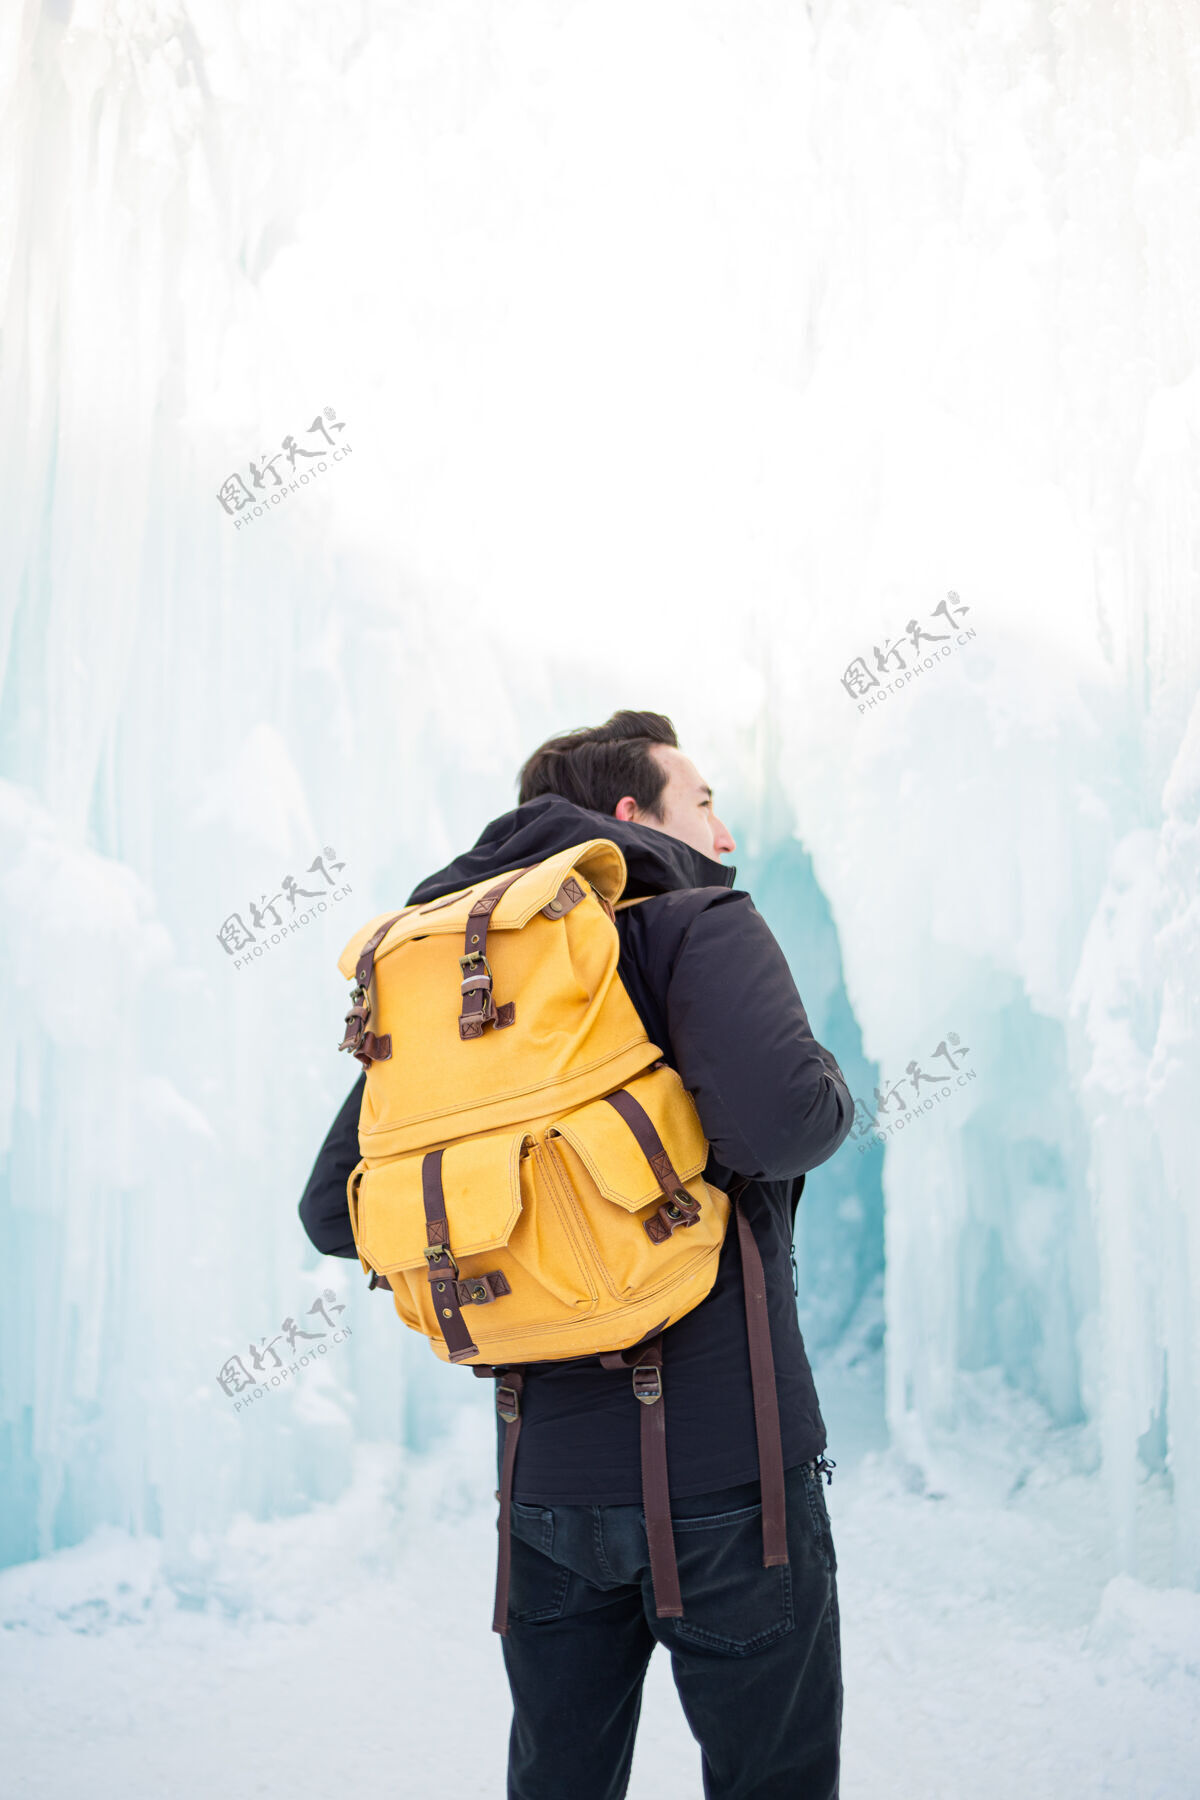 下雪一个穿着黑色夹克和棕色背包的男人站在雾蒙蒙的森林里冬天背包寒冷